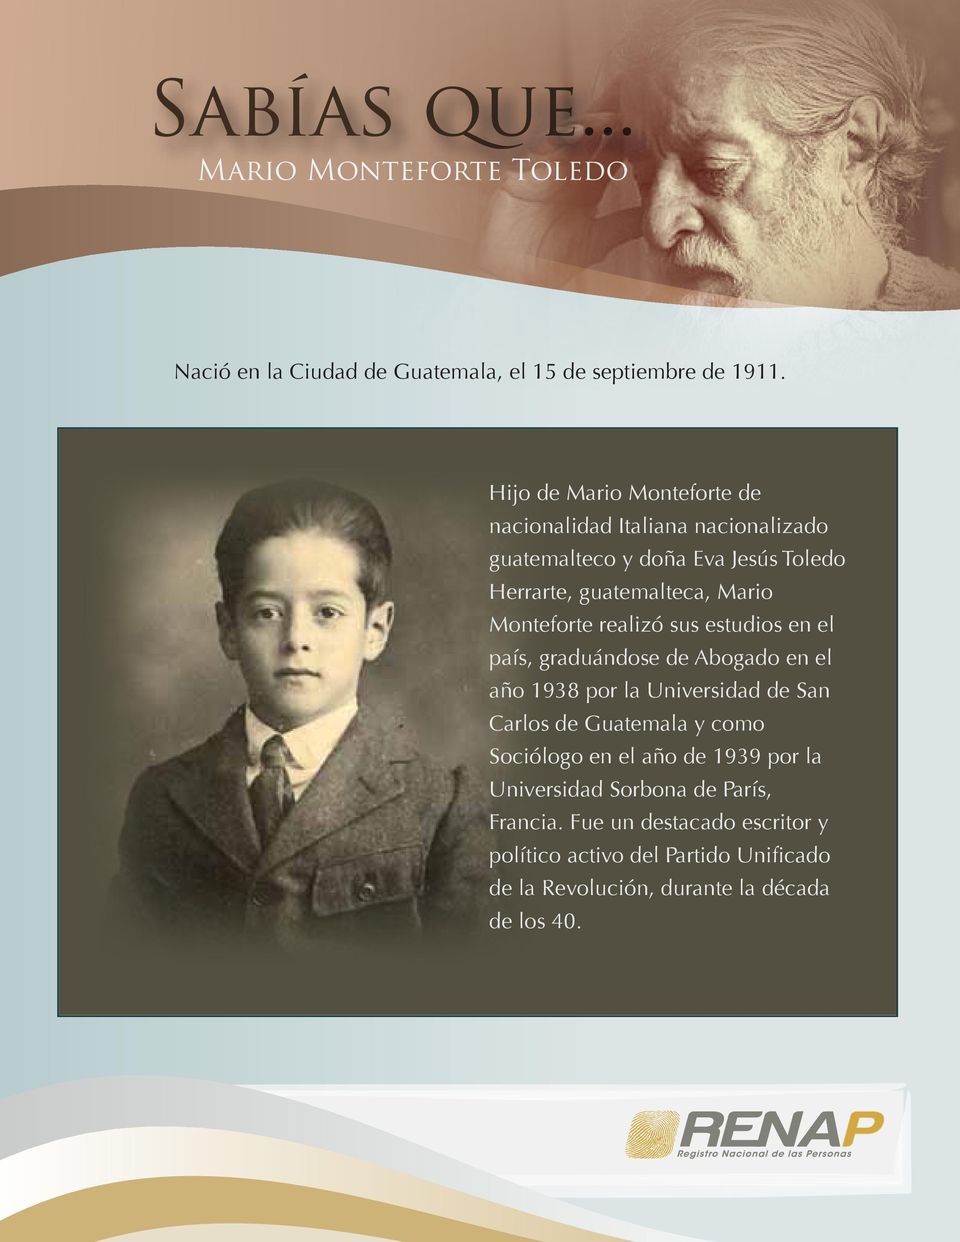 Mario Monteforte realizó sus estudios en el país, graduándose de Abogado en el año 1938 por la Universidad de San Carlos de